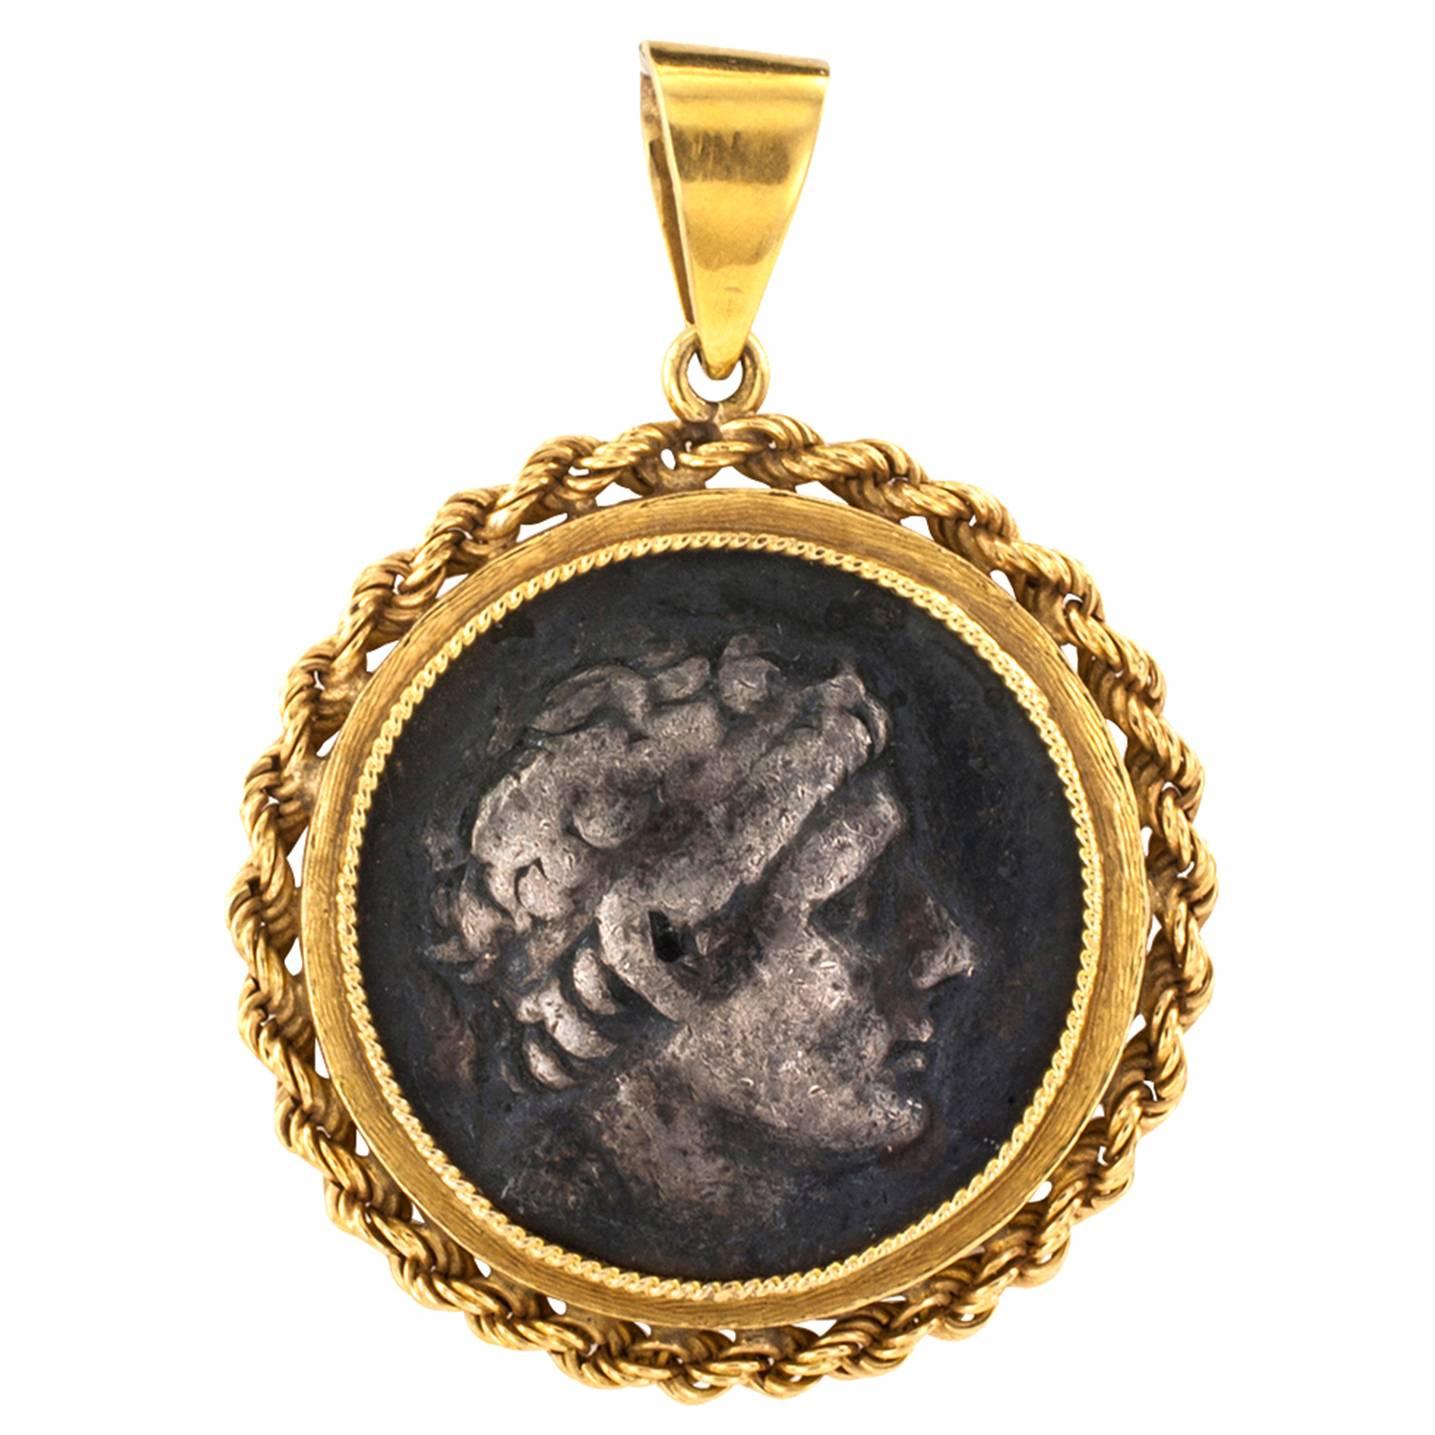 Zolotas Ancient Coin Pendant